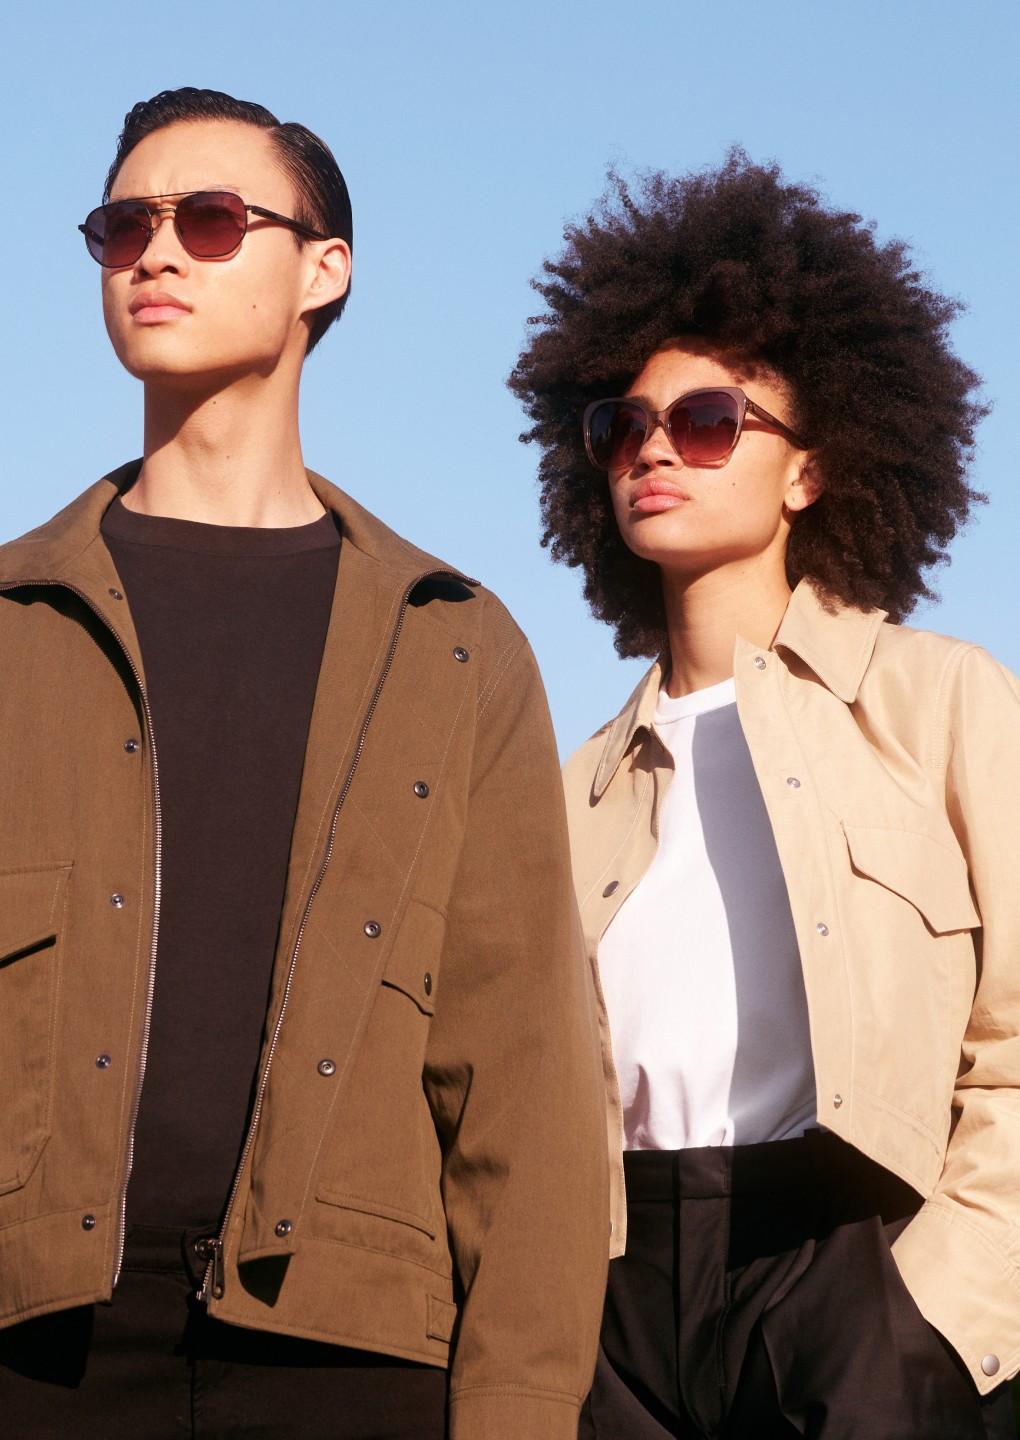 Man and Woman wearing TUMI sunglasses